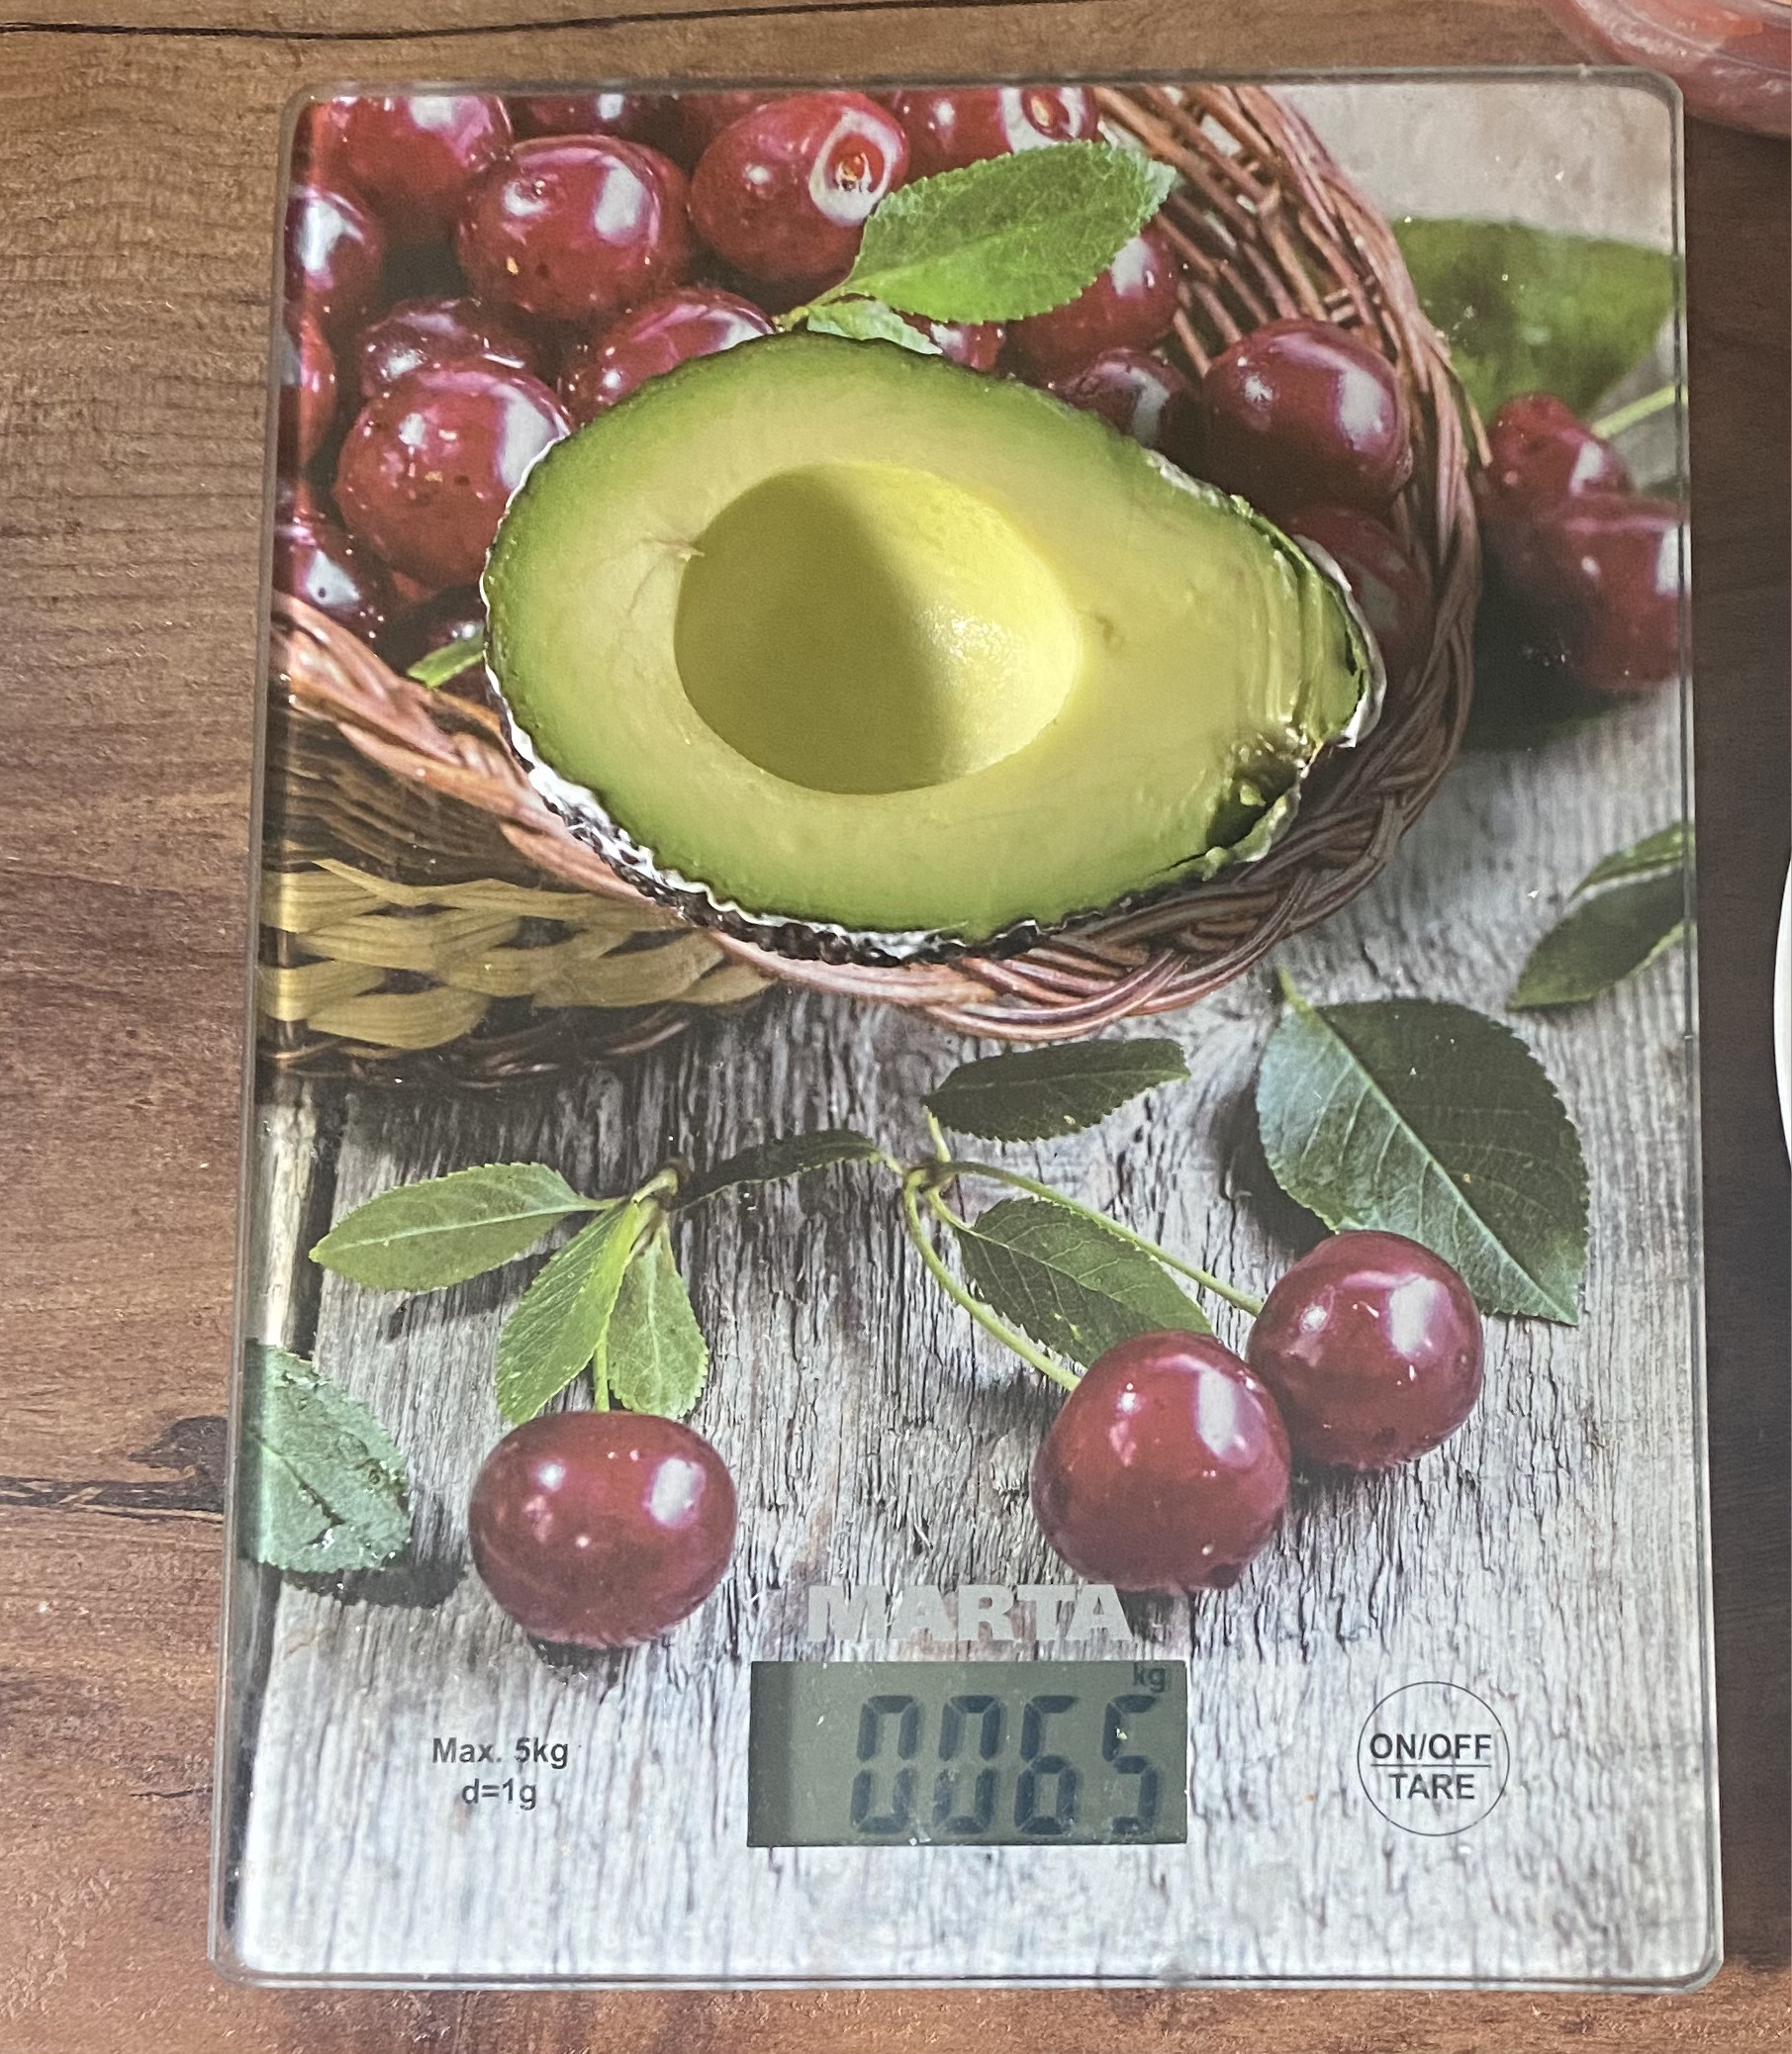 Сколько весит половинка авокадо Haas? Ответ здесь!